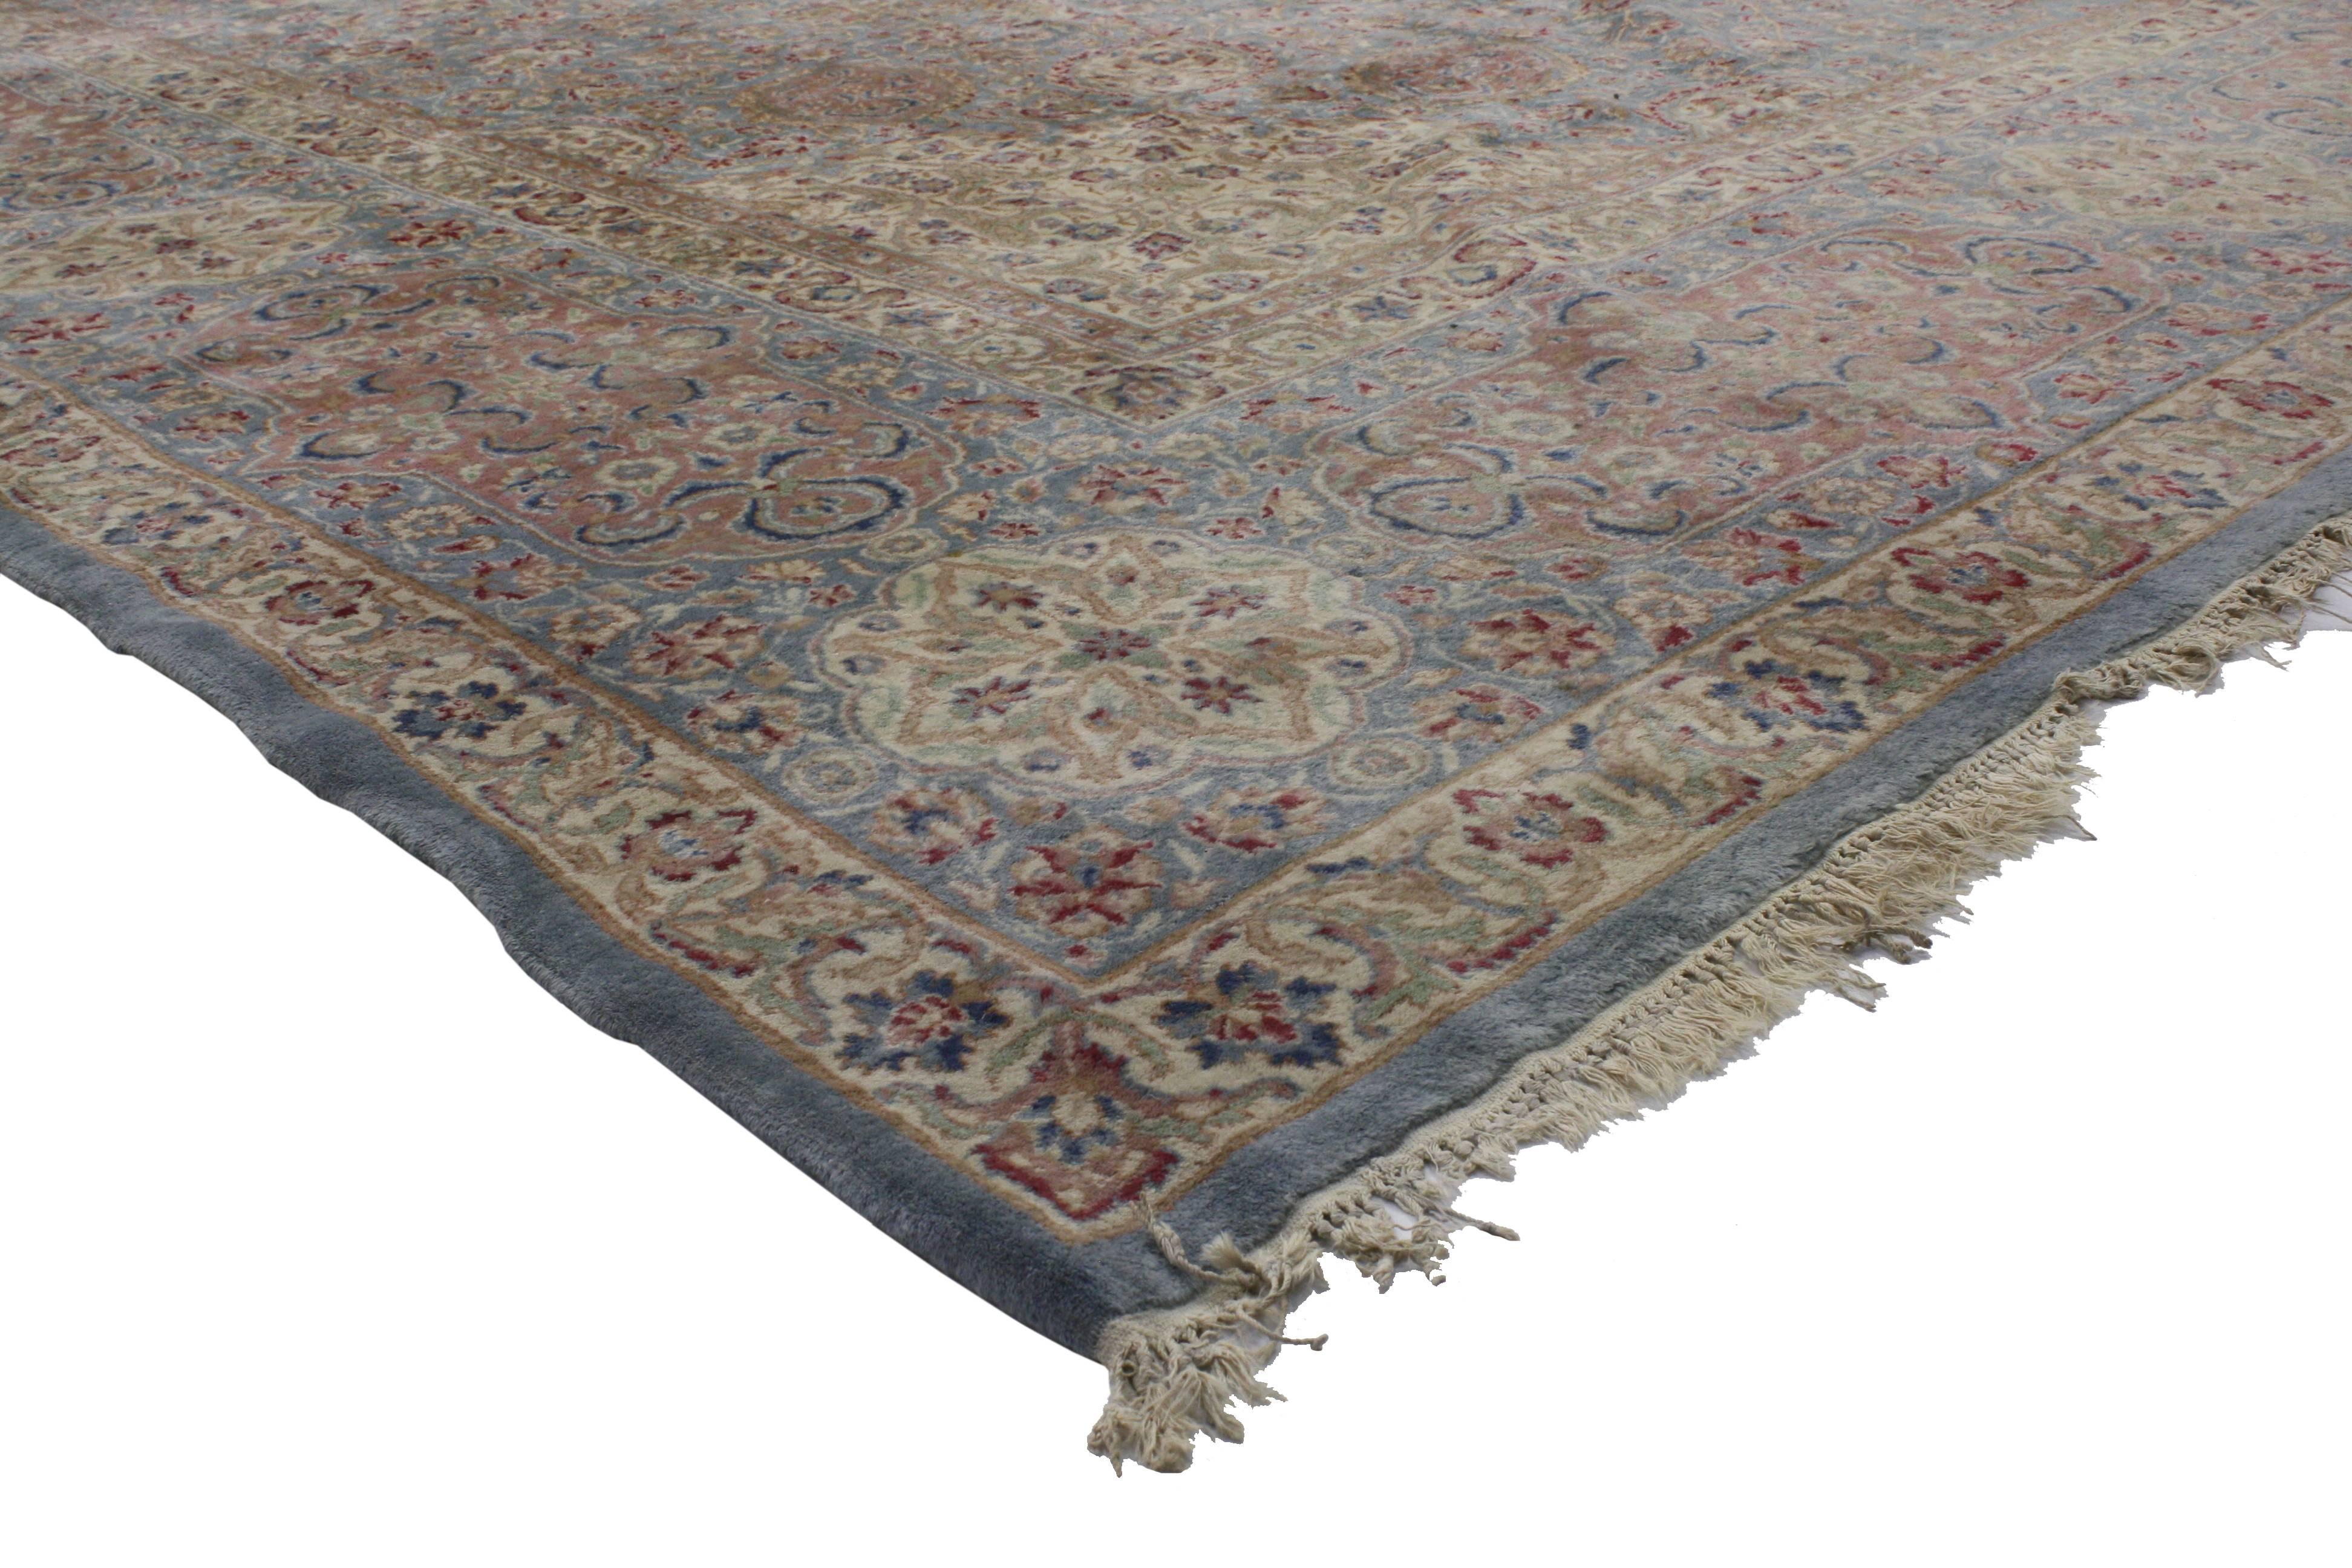 76599 Tapis persan vintage de taille Palace Kirman avec un style provincial français romantique. Ce tapis Persan vintage Kerman en laine nouée à la main, de la taille d'un palais, présente un médaillon en forme de cuspide à seize pointes, flanqué